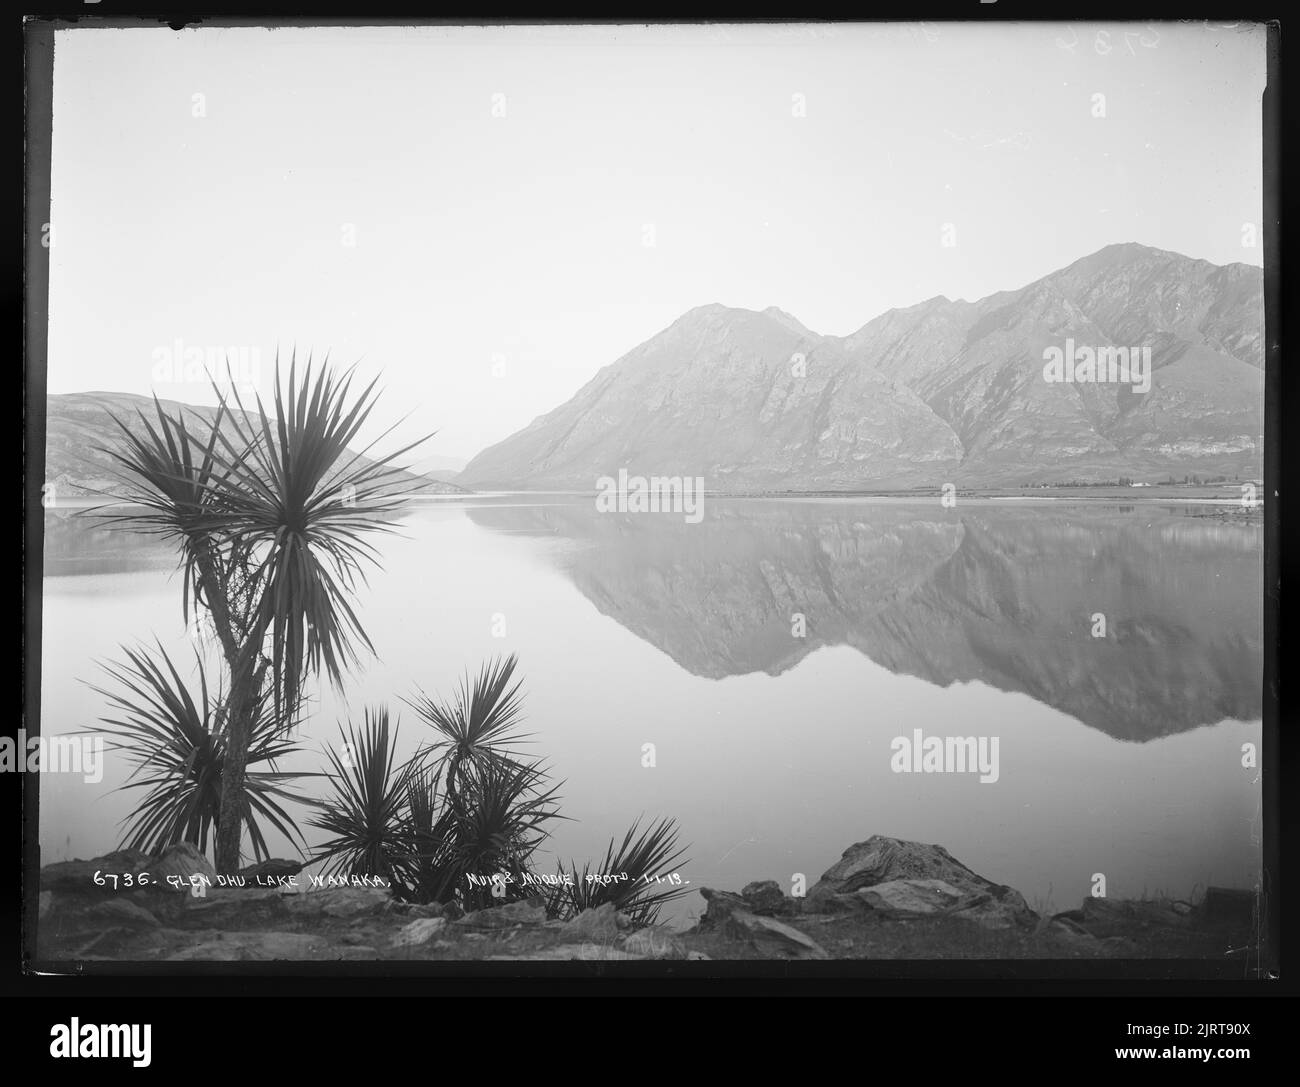 Glendhu, lac Wanaka, Nouvelle-Zélande, par Muir & Moodie. Banque D'Images